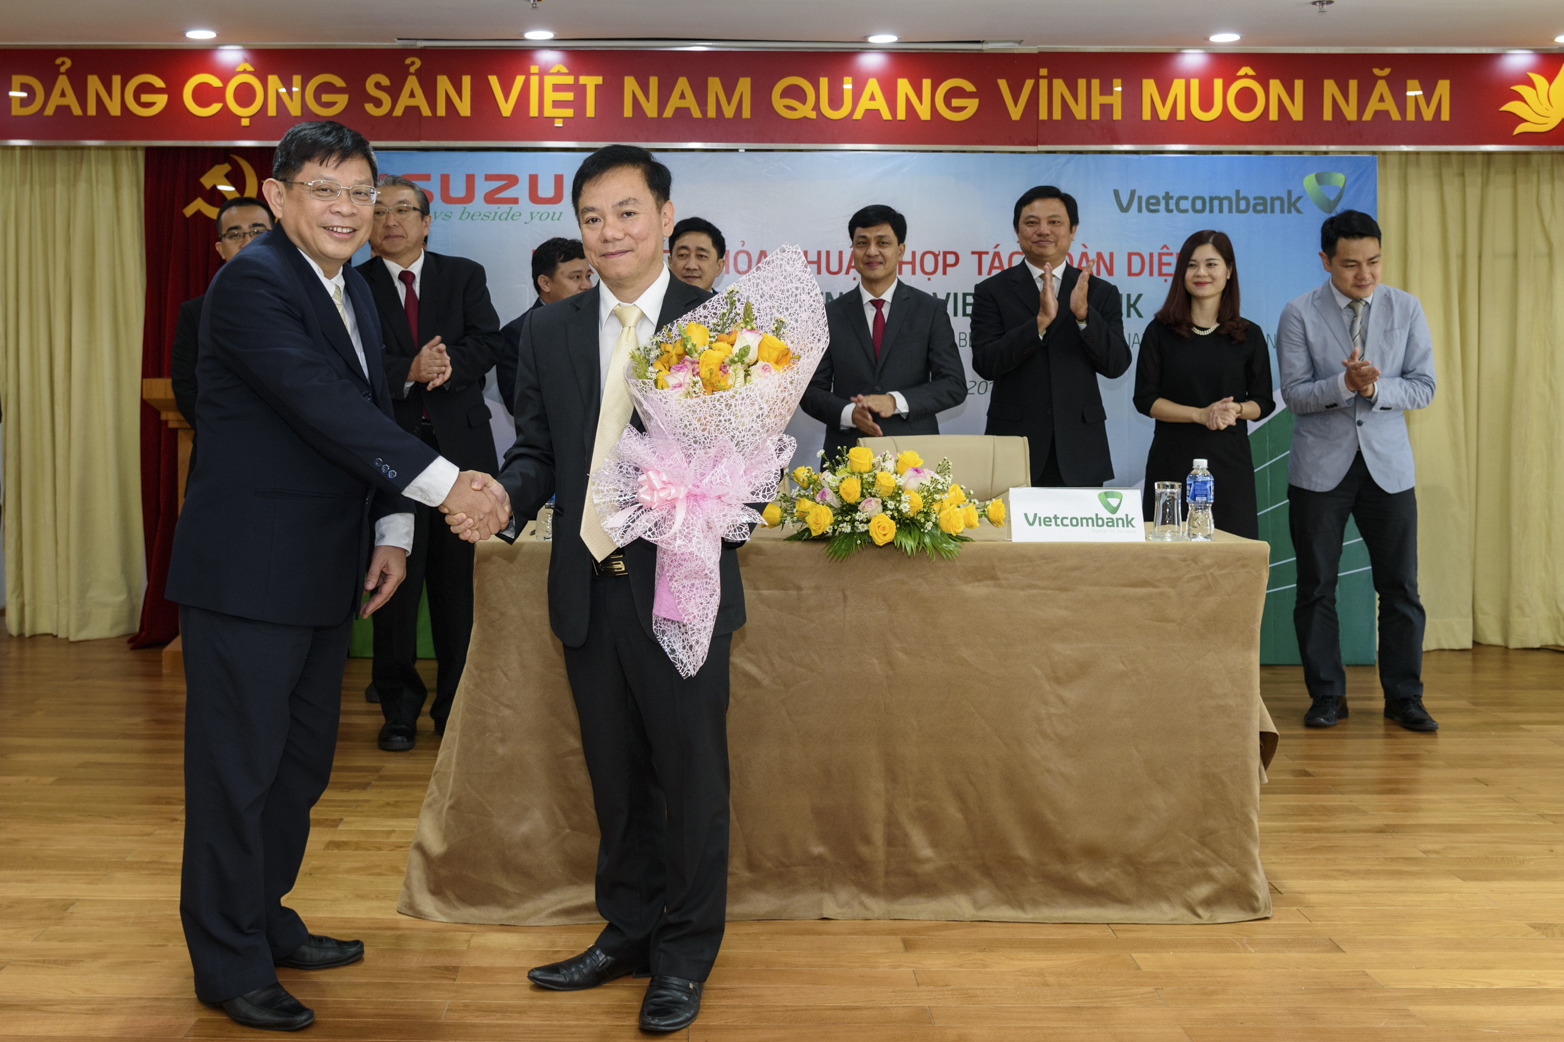 Isuzu Việt Nam và Vietcombank chính thức xây dựng mối quan hệ bền chặt, phát huy tối đa mọi tiềm năng & nguồn lực (Nguồn ảnh: Vietcombank)